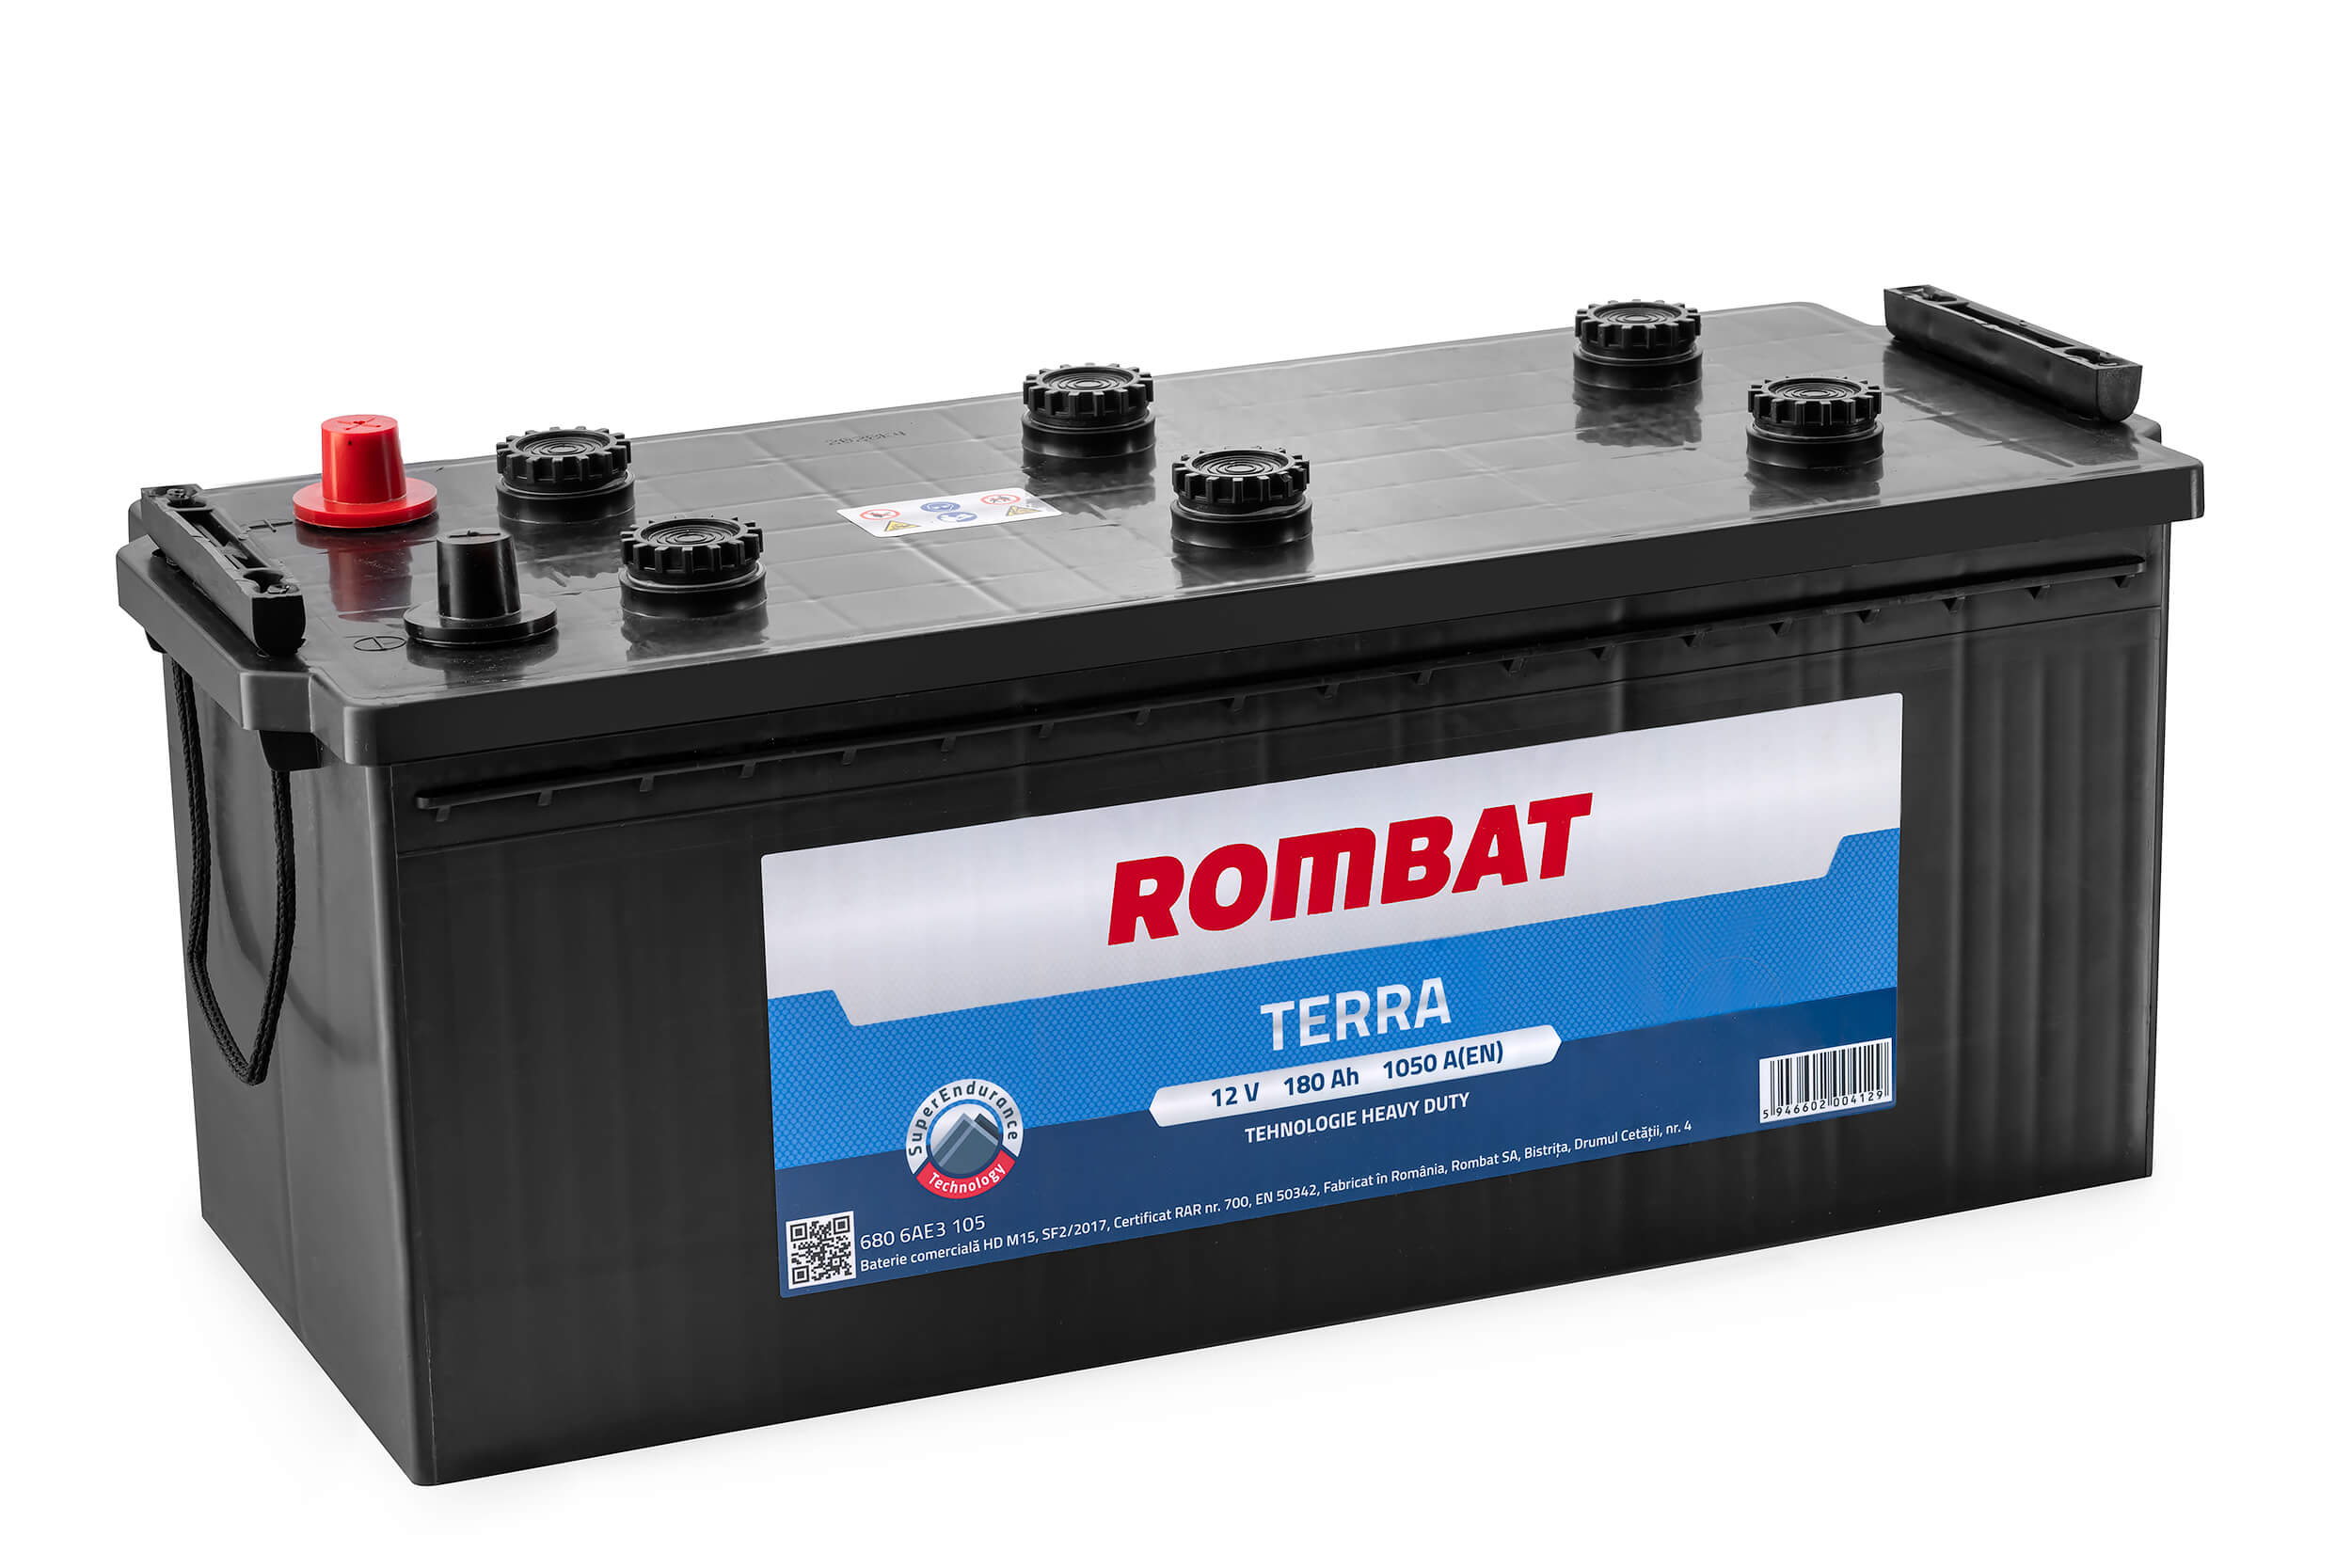 ROMBAT 680 6AE3 105 TERRA...